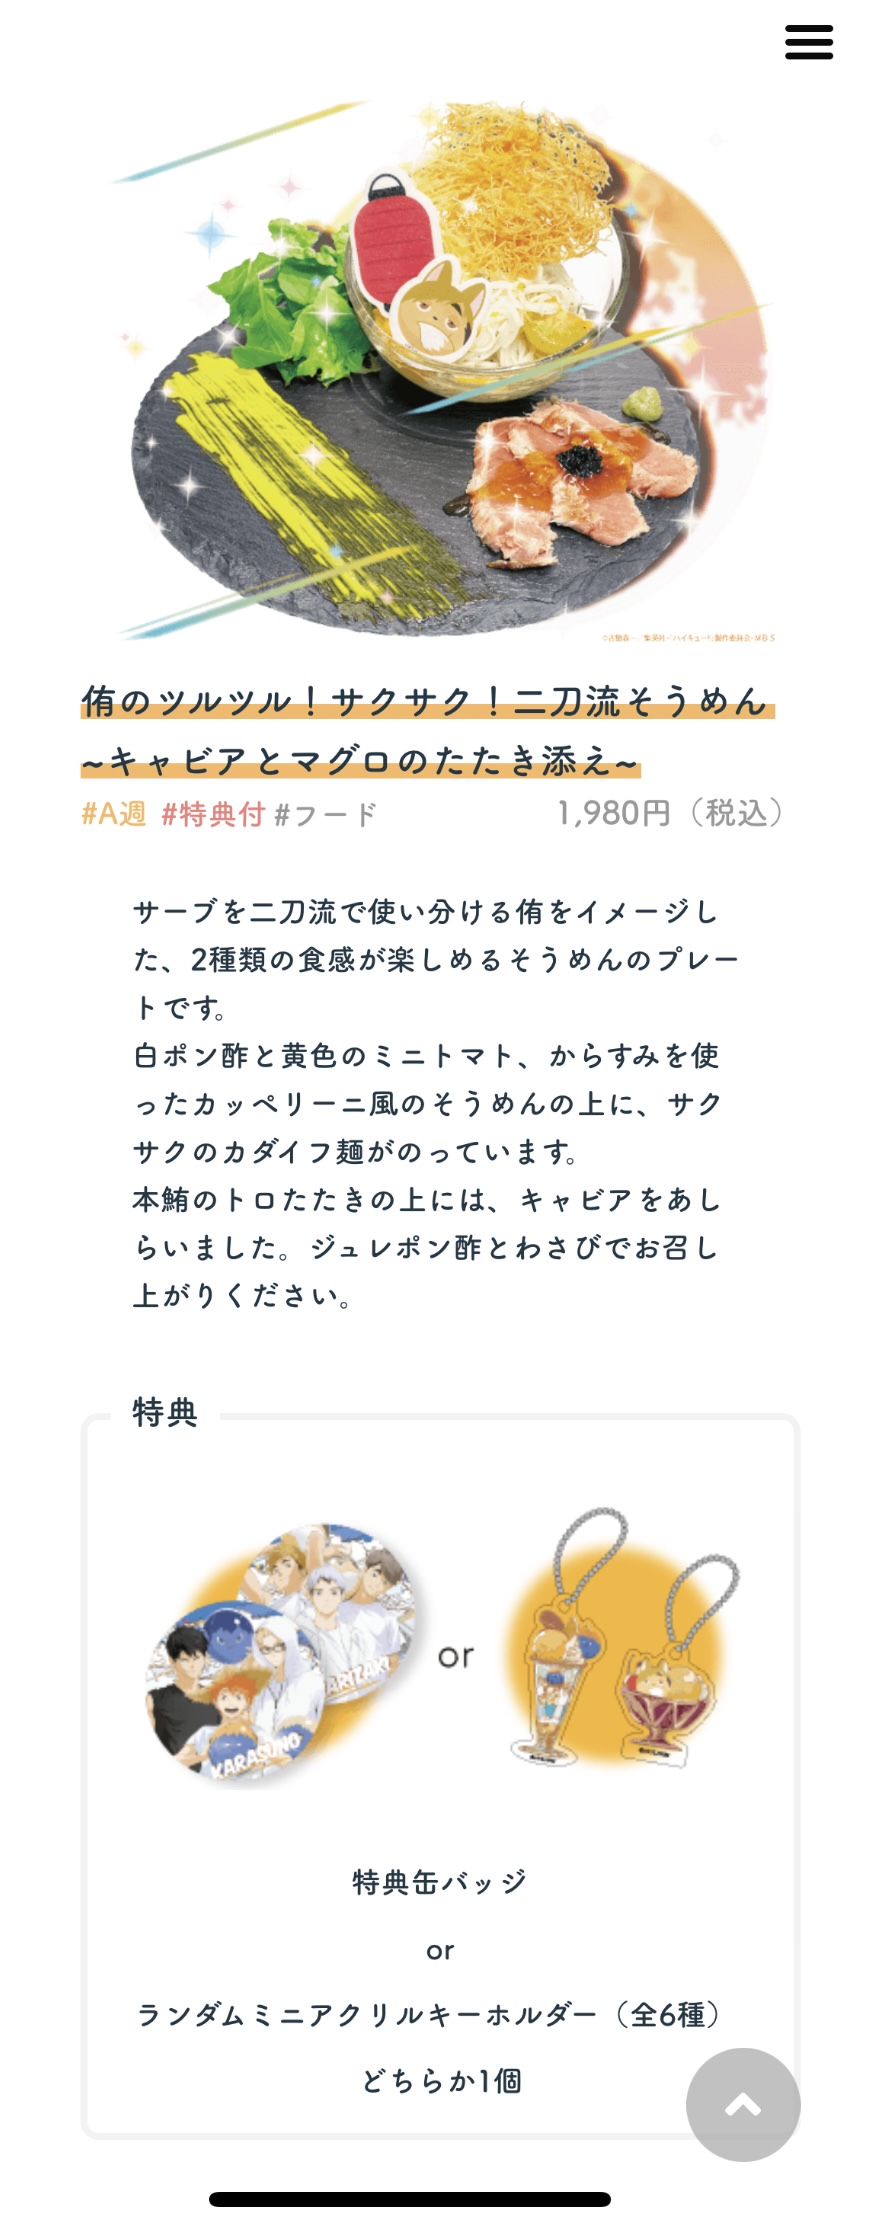 ハイキュー!! × 文房具カフェ表参道店 7月14日よりコラボカフェ開催!